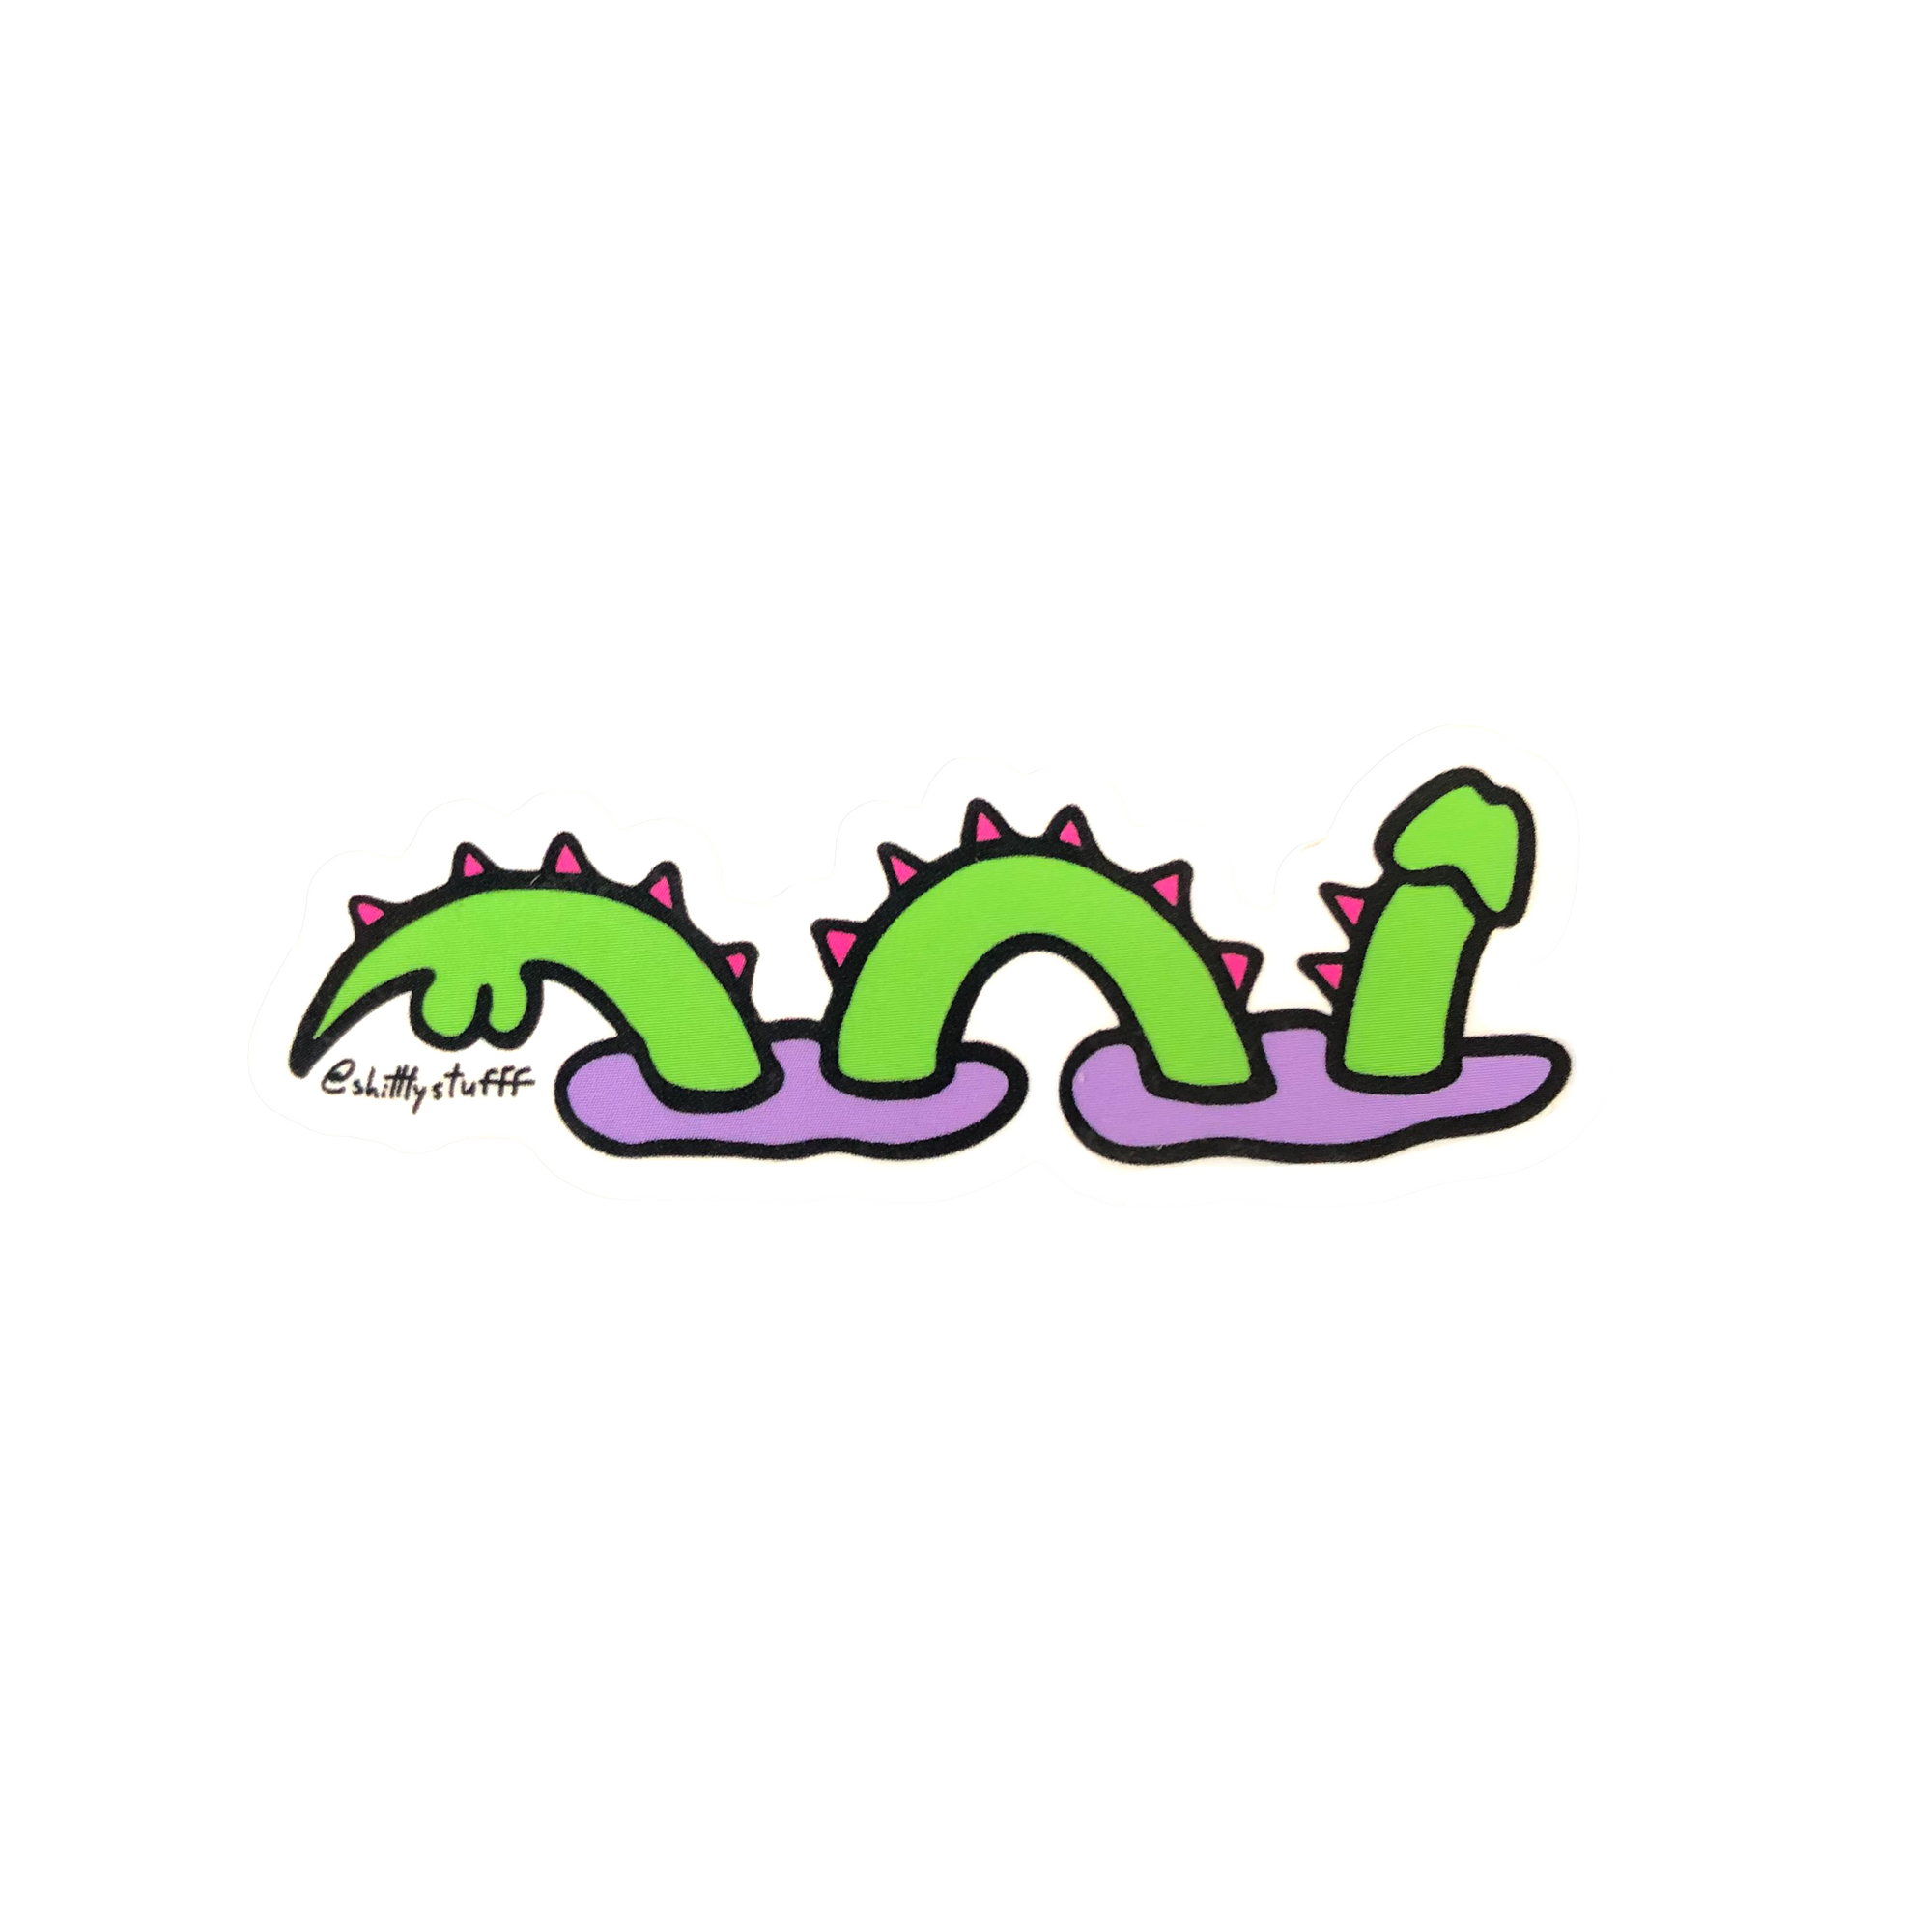 C*ck Ness Monster Sticker